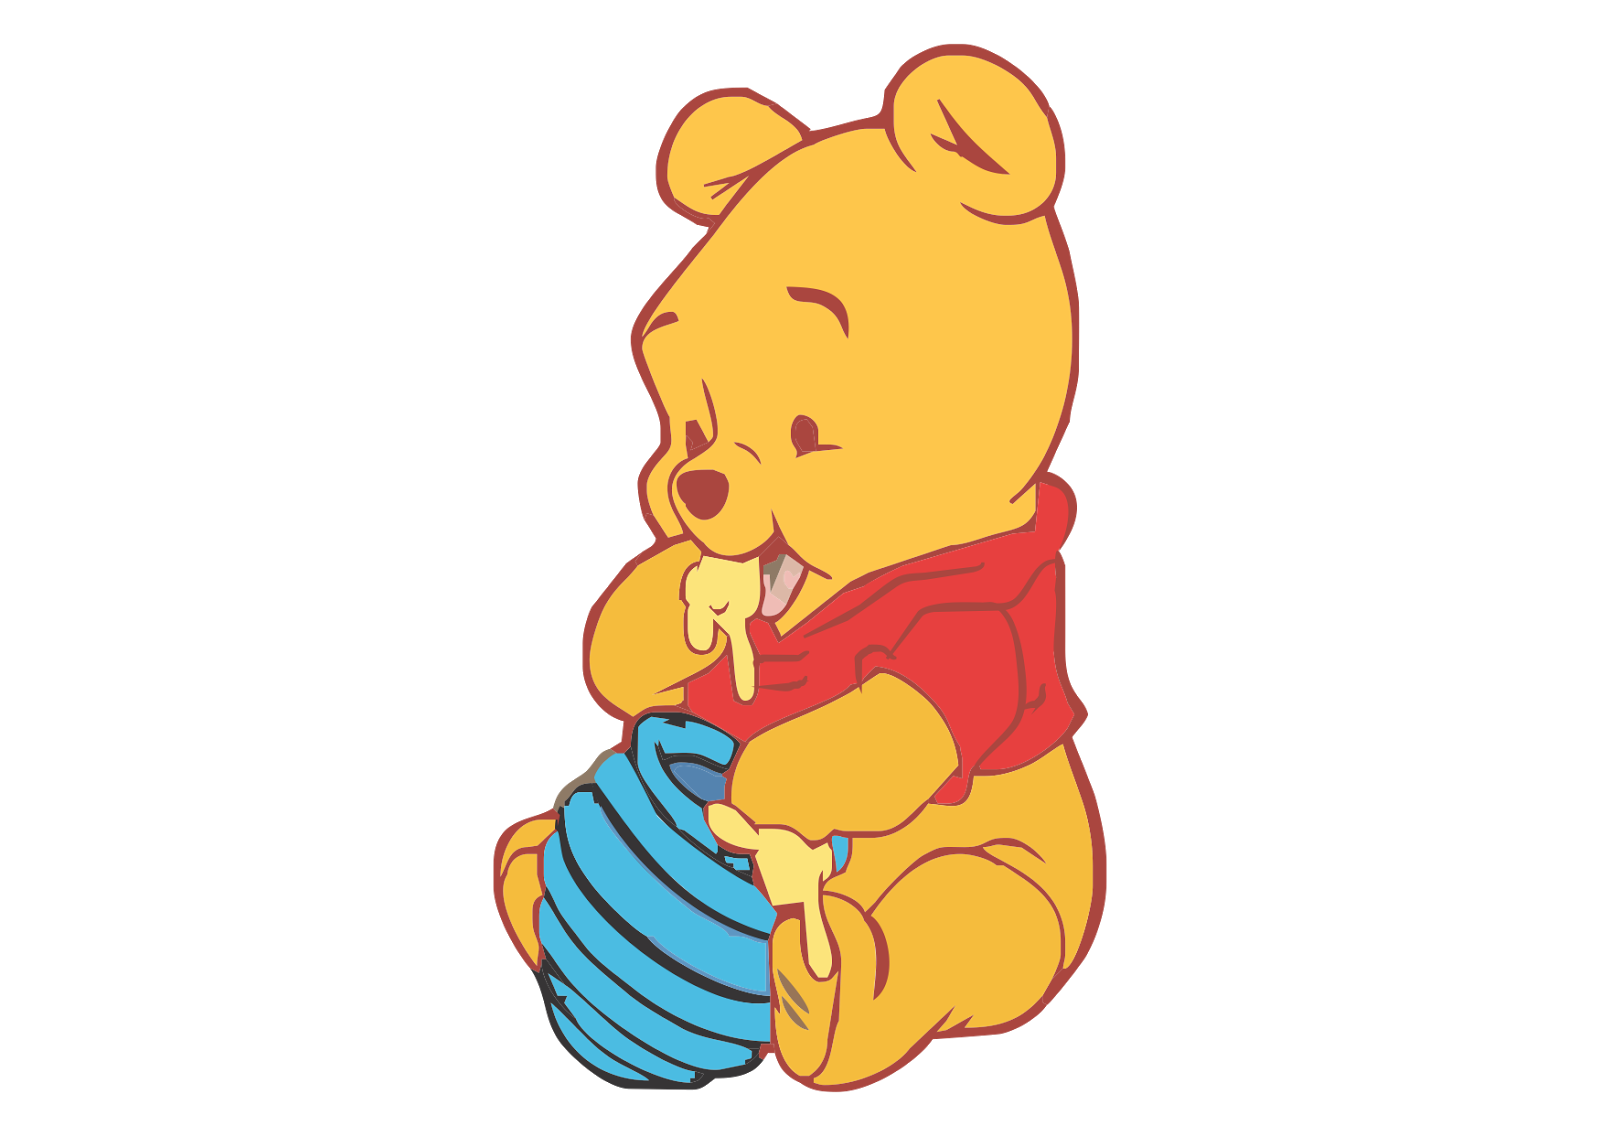 Lustige Zeichentrickfiguren und Malvorlagen von Winnie the Pooh für Kinder